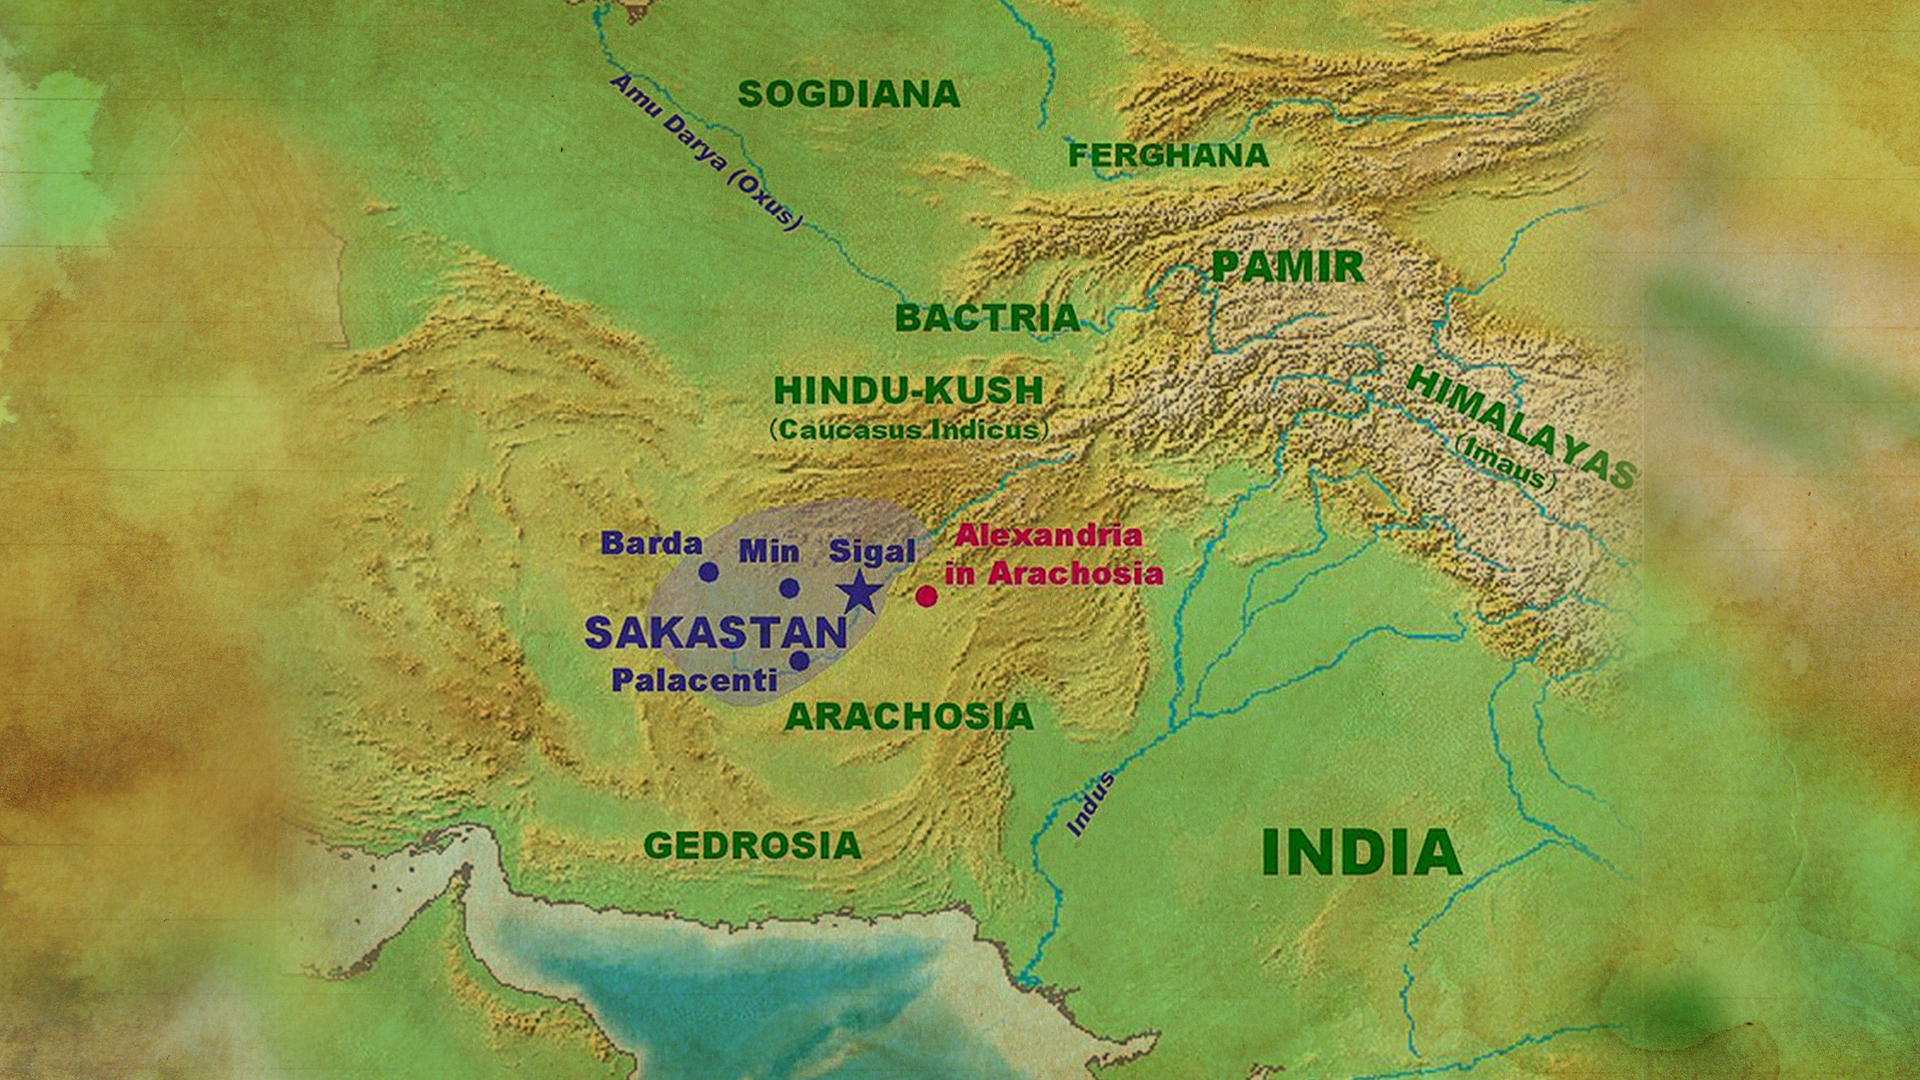 Map of Sakasthan